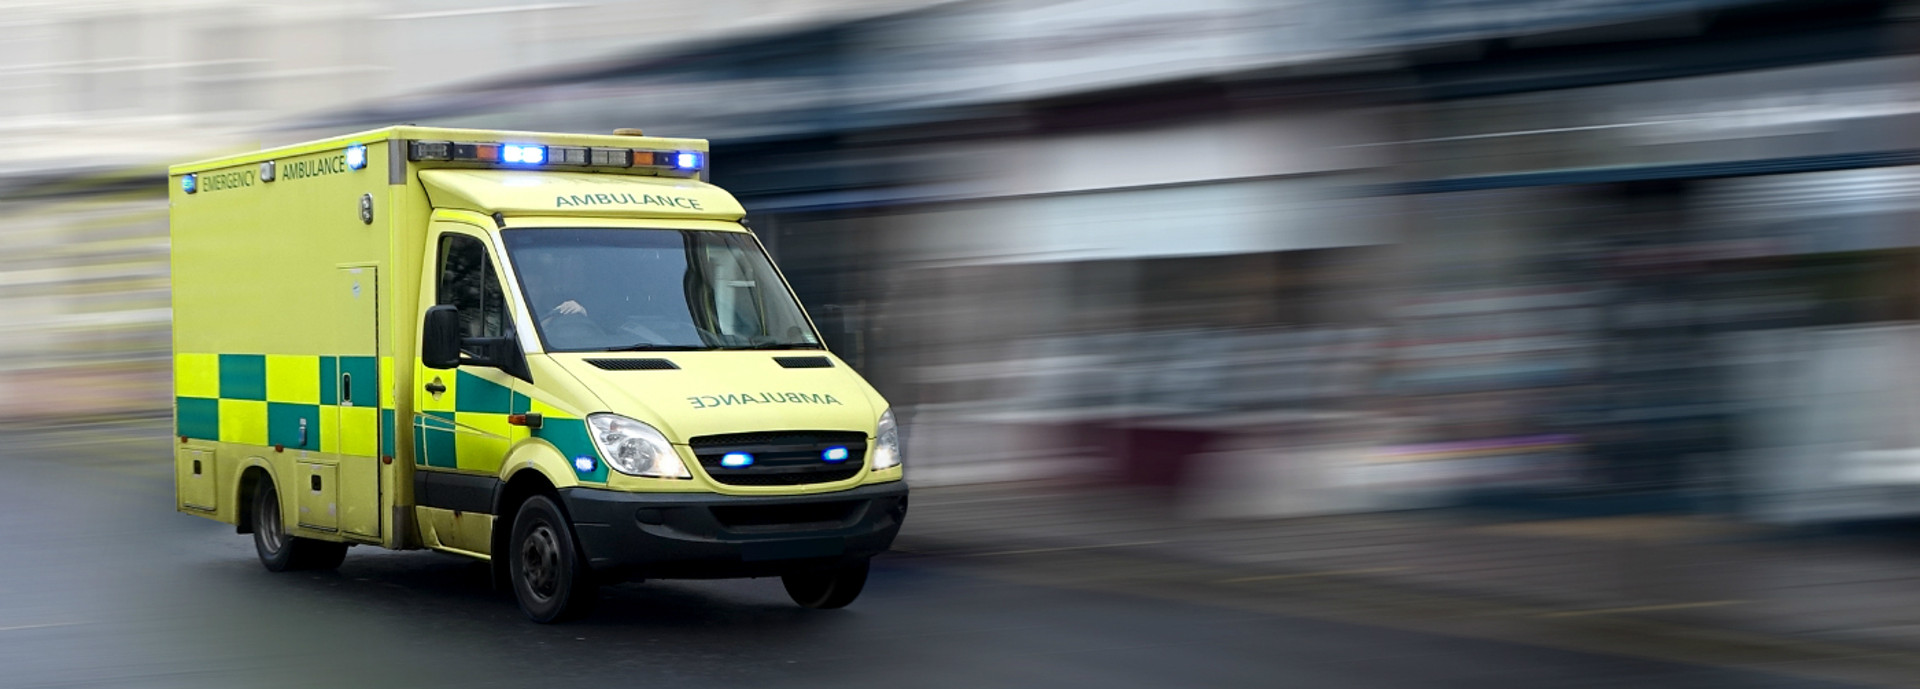 An image of an ambulance